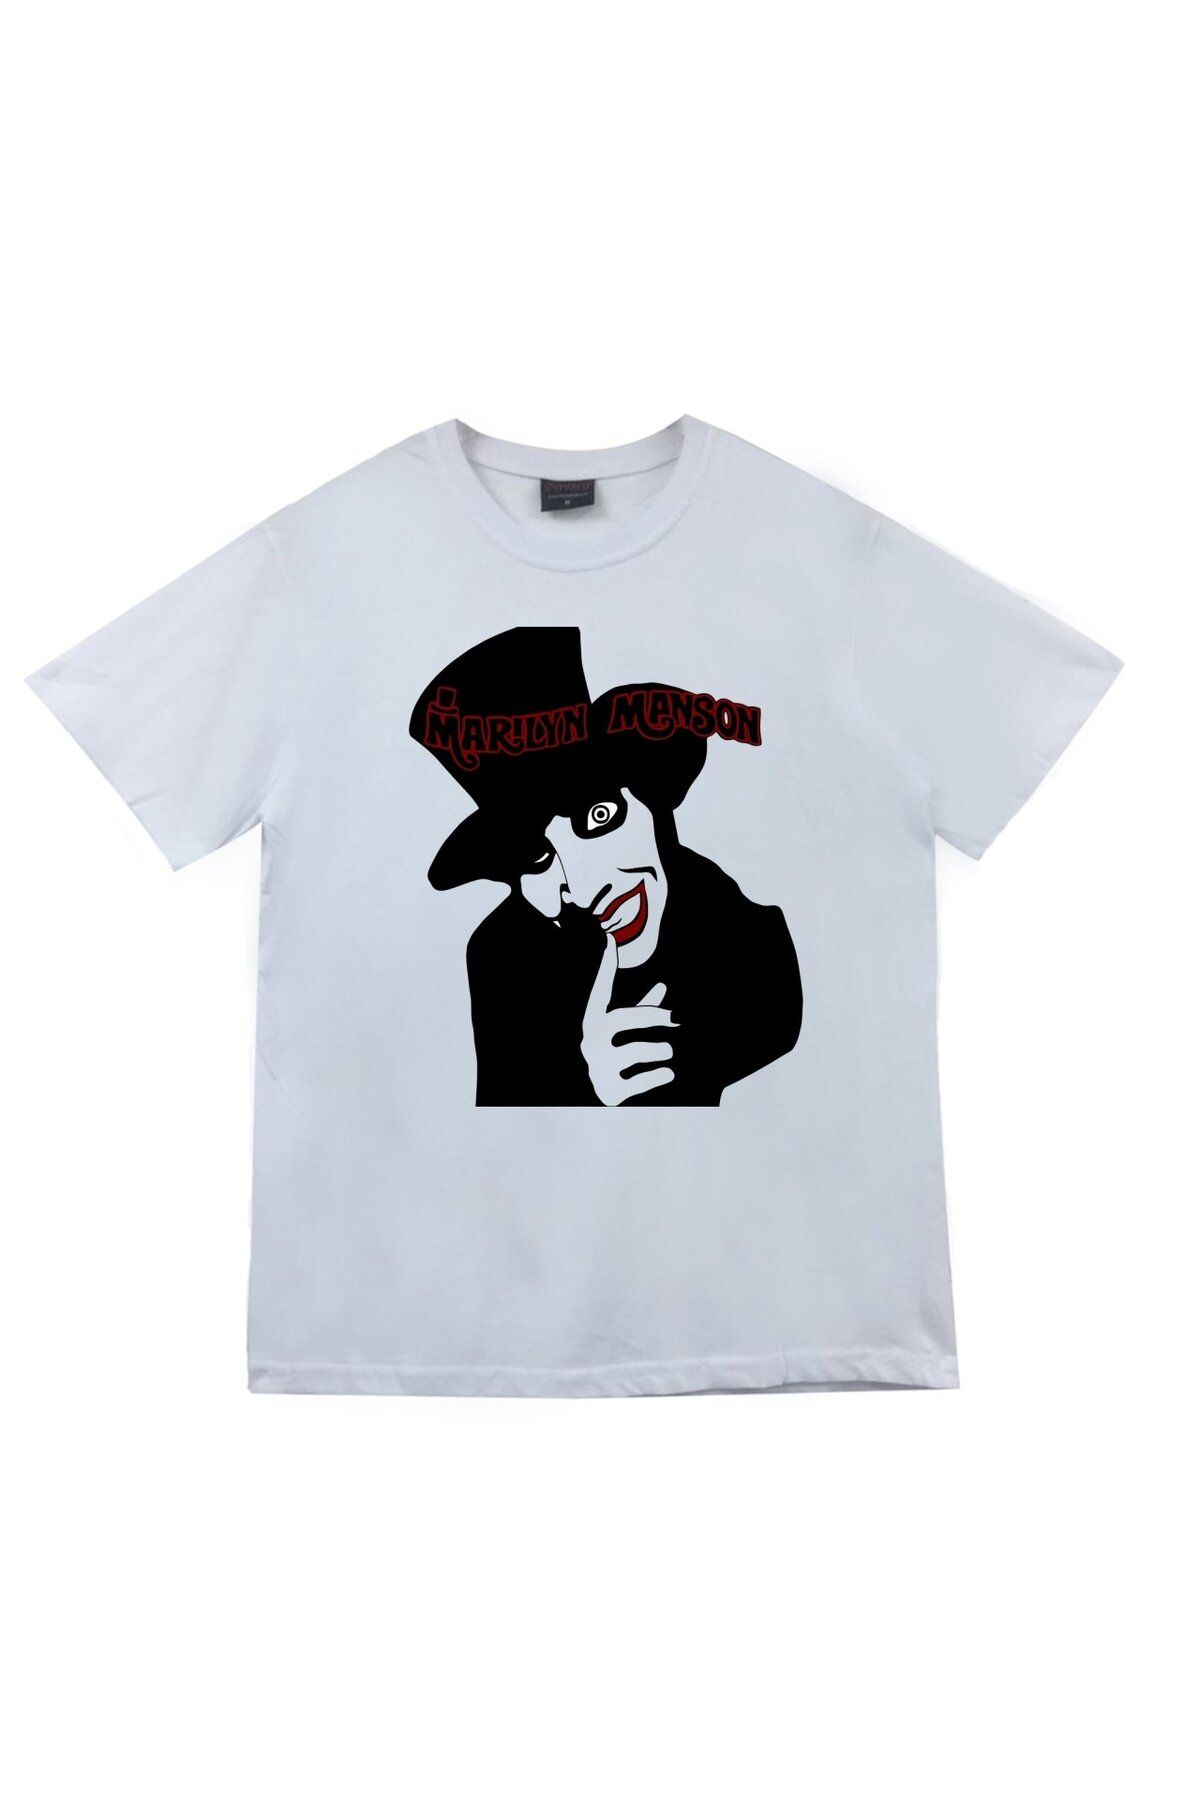 fame-stoned Marilyn Manson Baskılı T-shirt